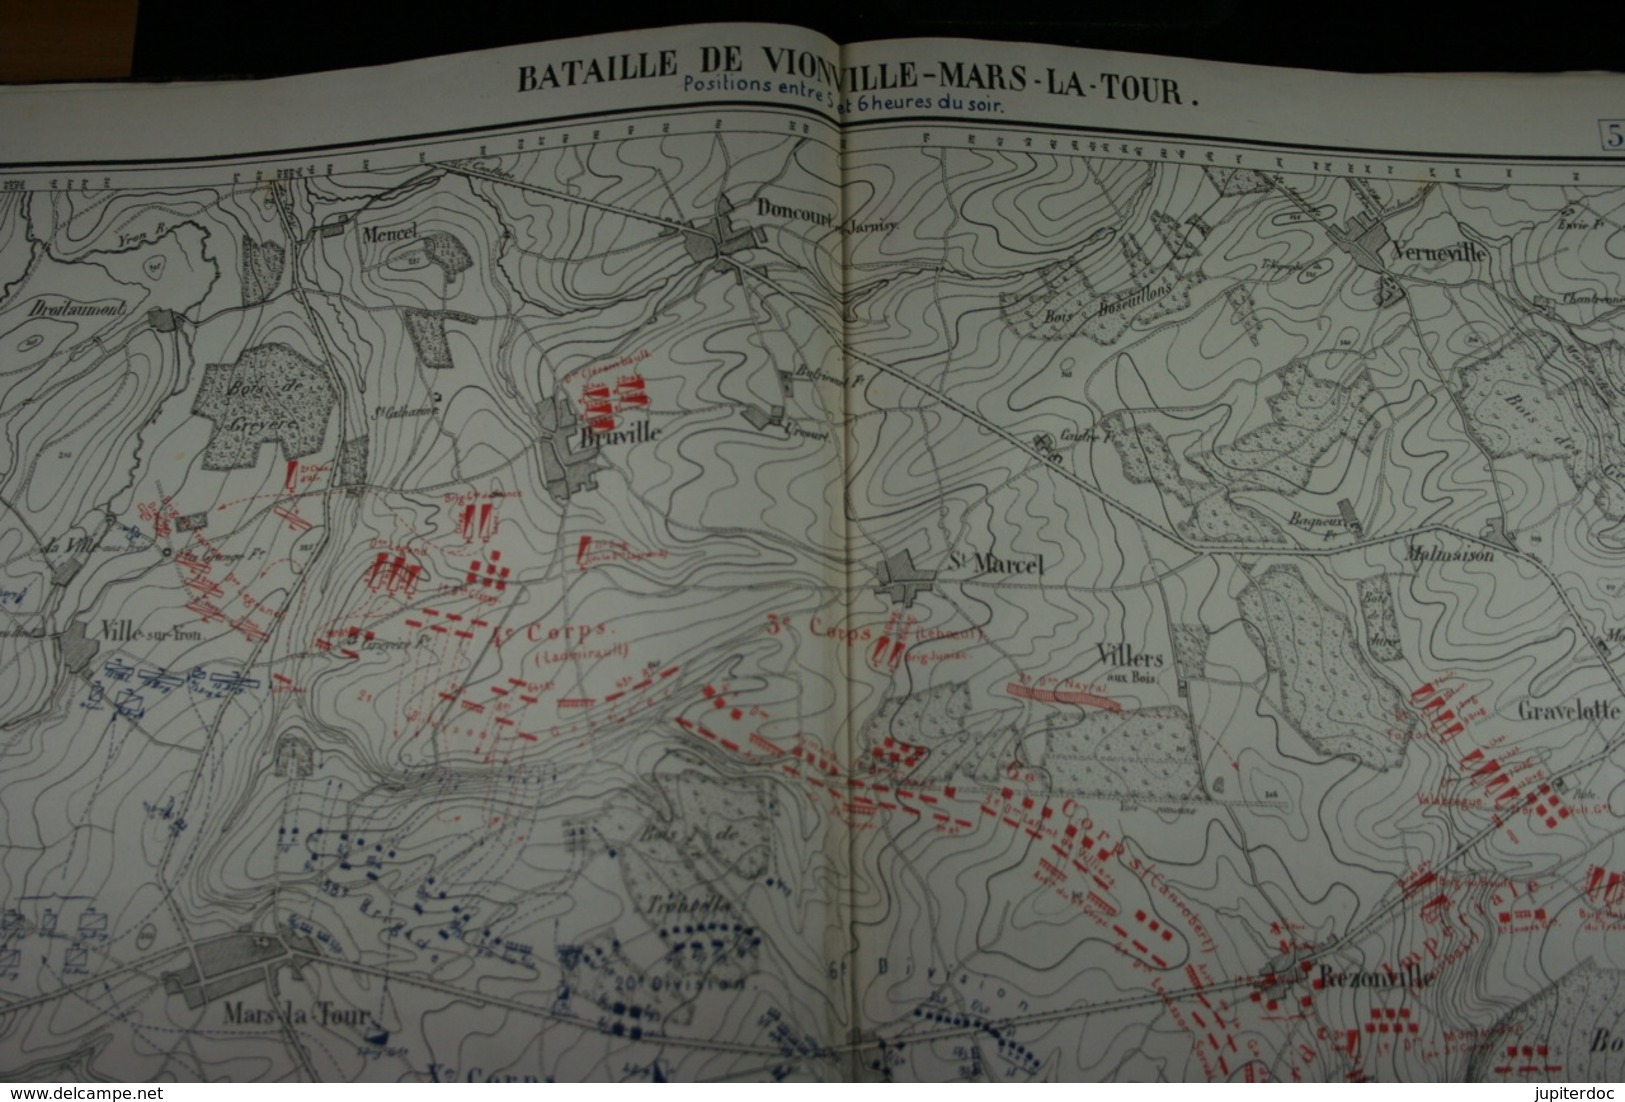 Atlas d'Histoire militaire G. De Visschere 1891 64 cartes et plans